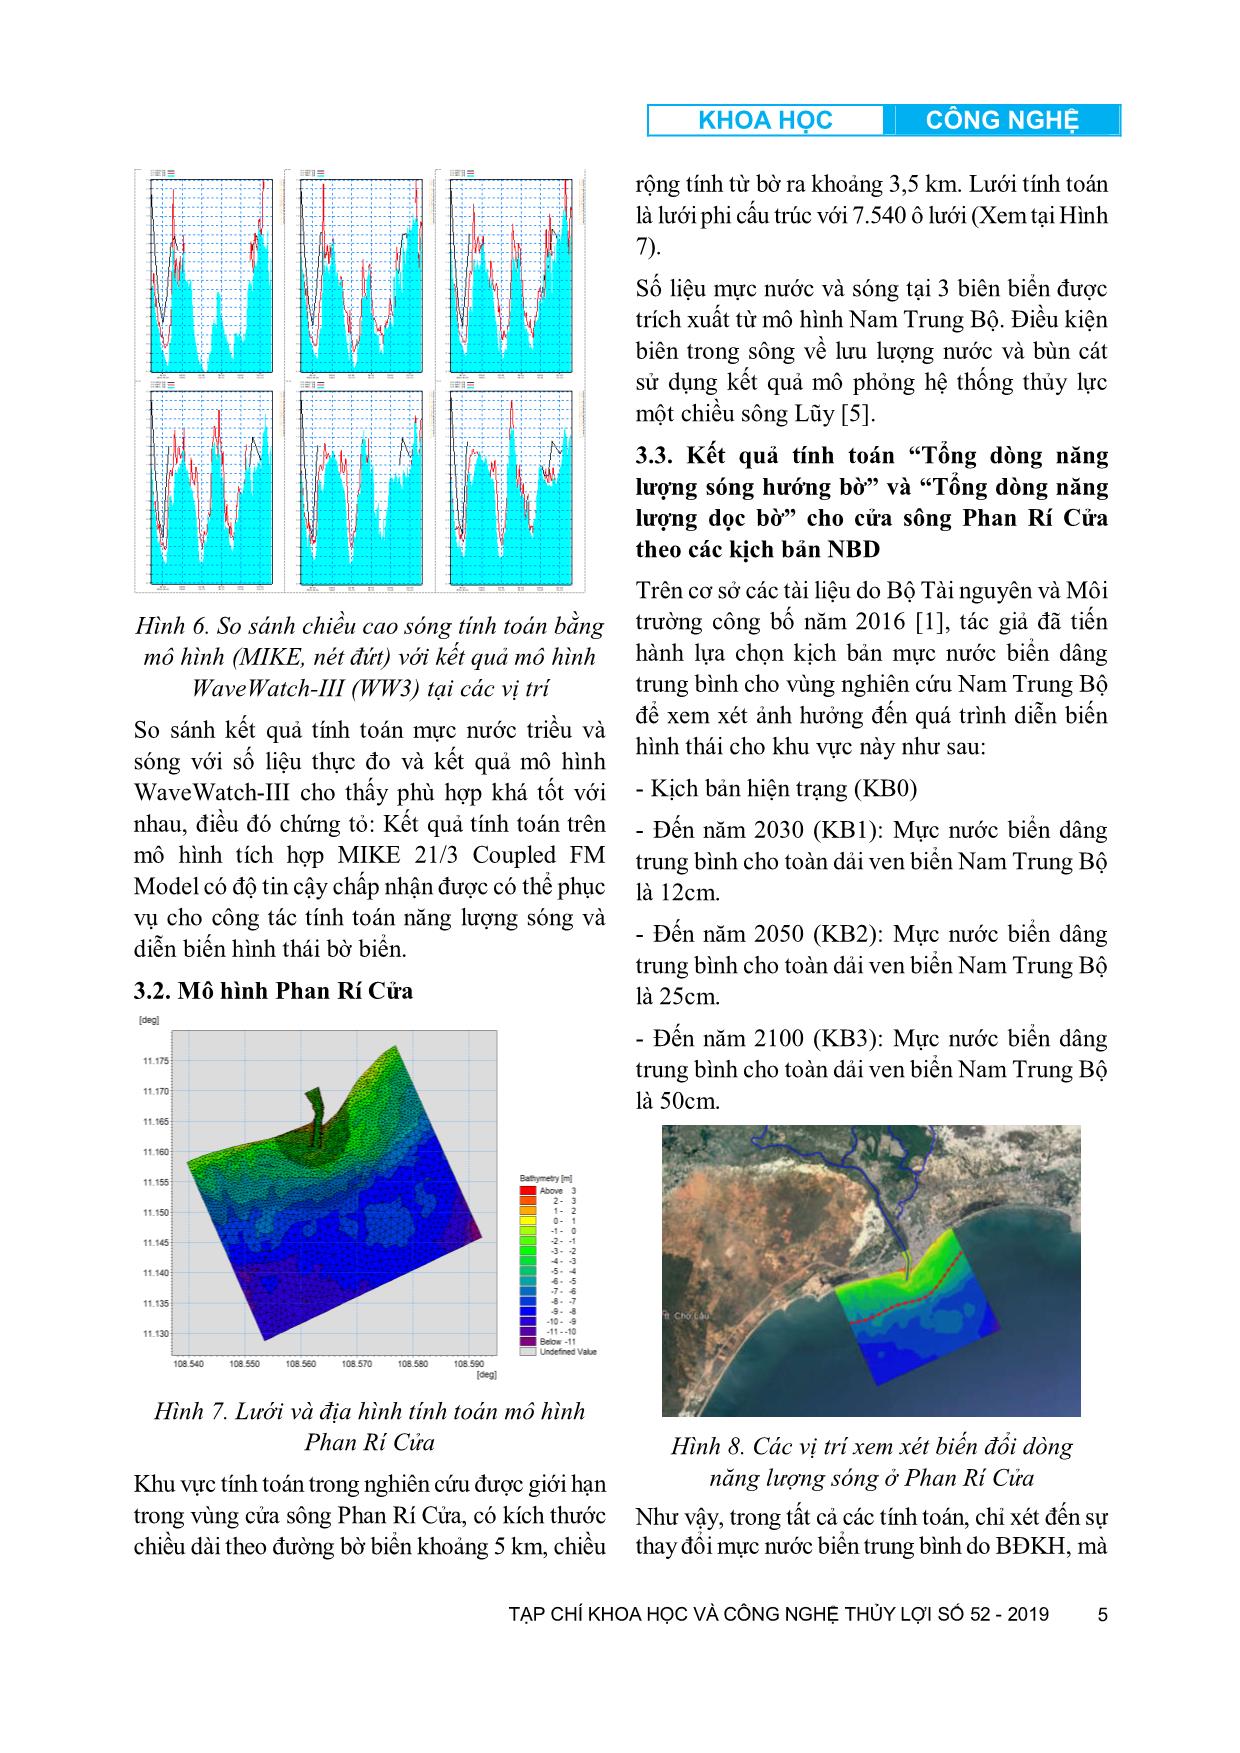 Biến đổi hình thái cửa sông ven biển Nam Trung Bộ dưới tác động của nước biển dâng trang 5